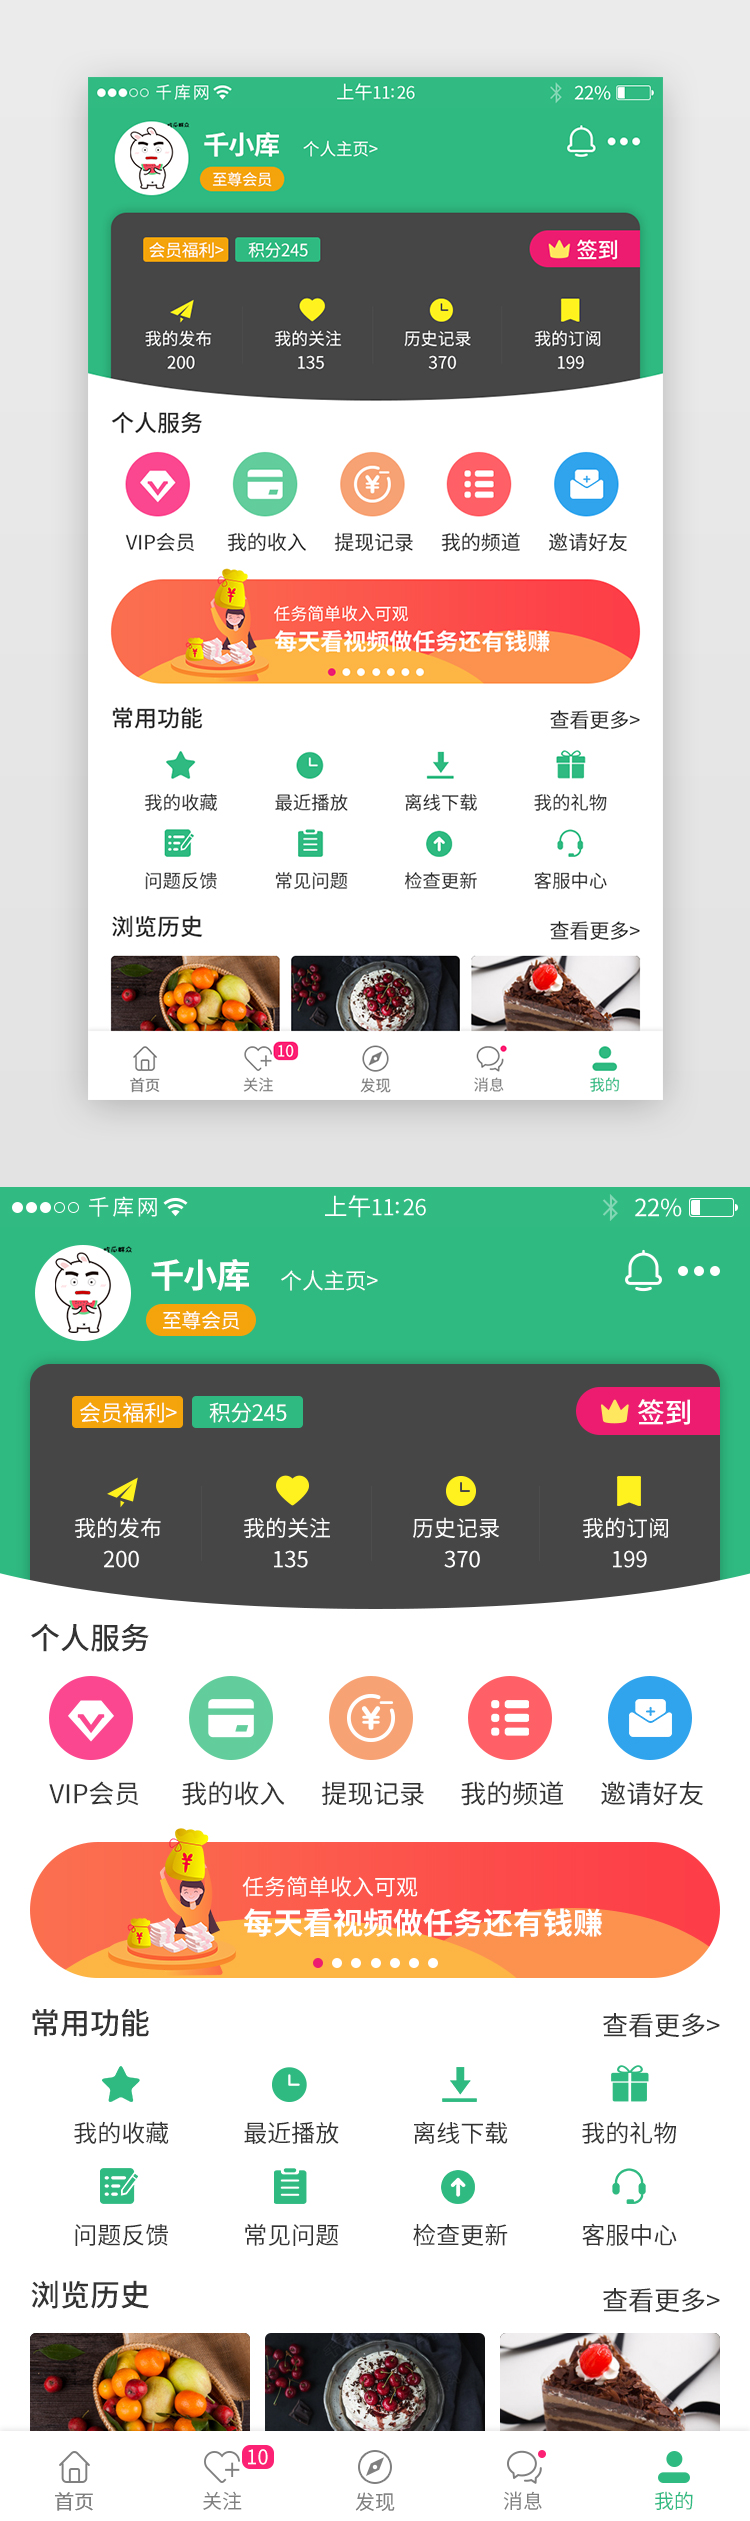 app个人中心界面模板设计图片